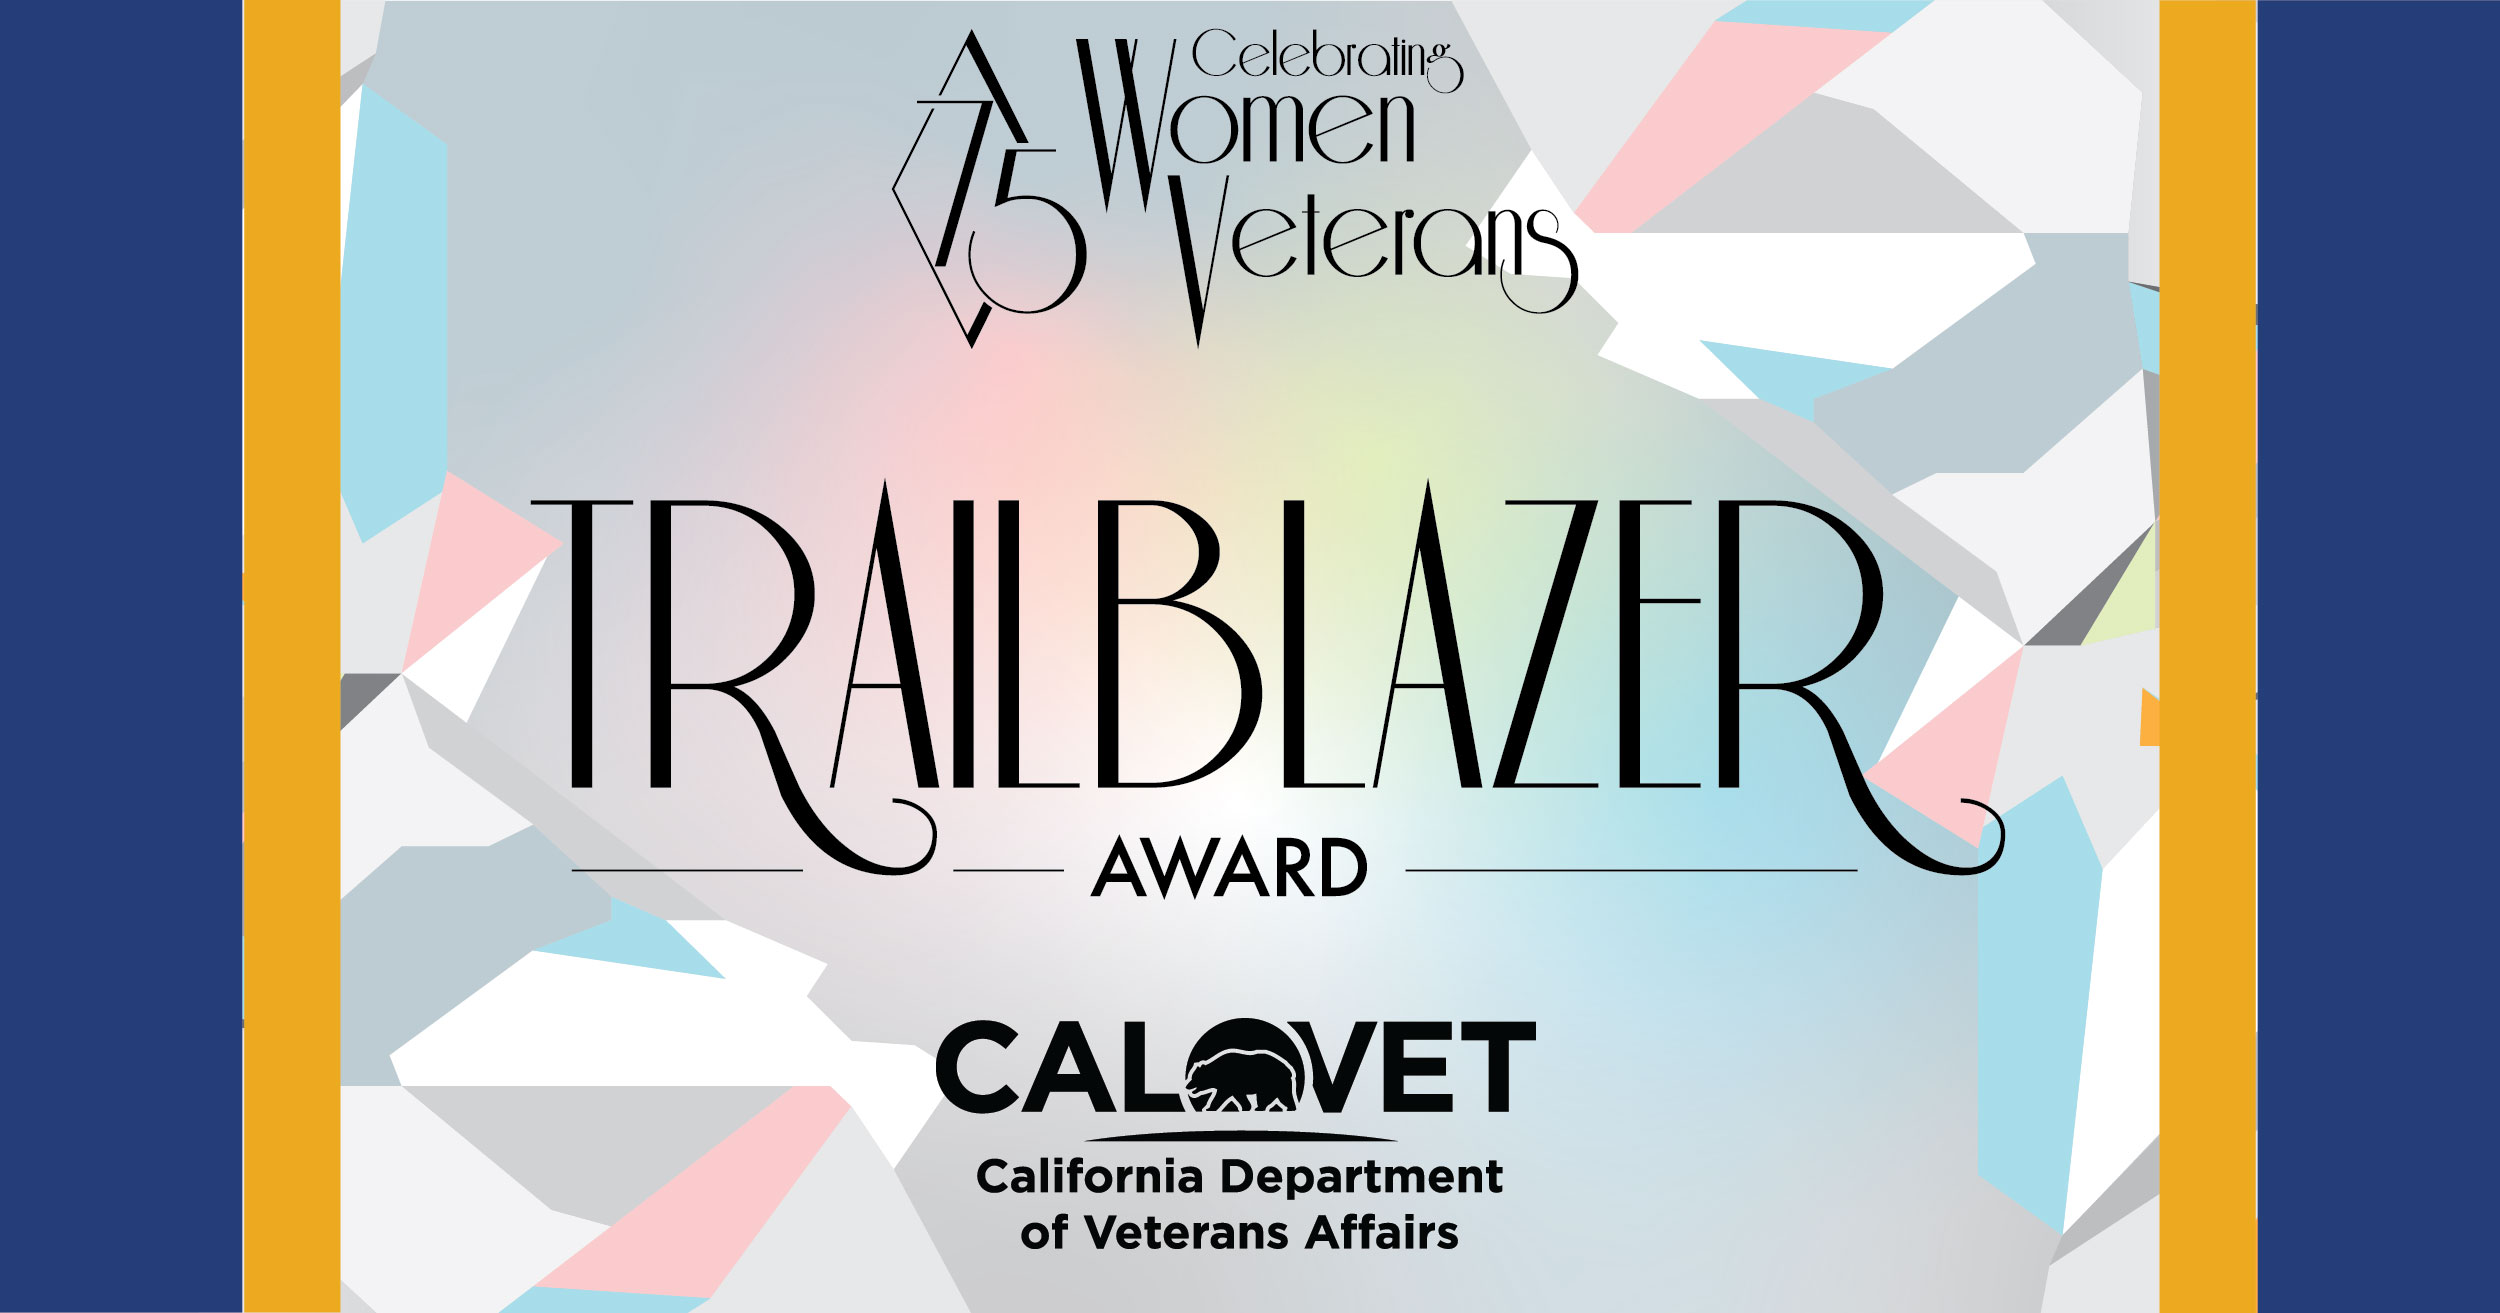 Celebrating Women Veterans Trailblazer Award